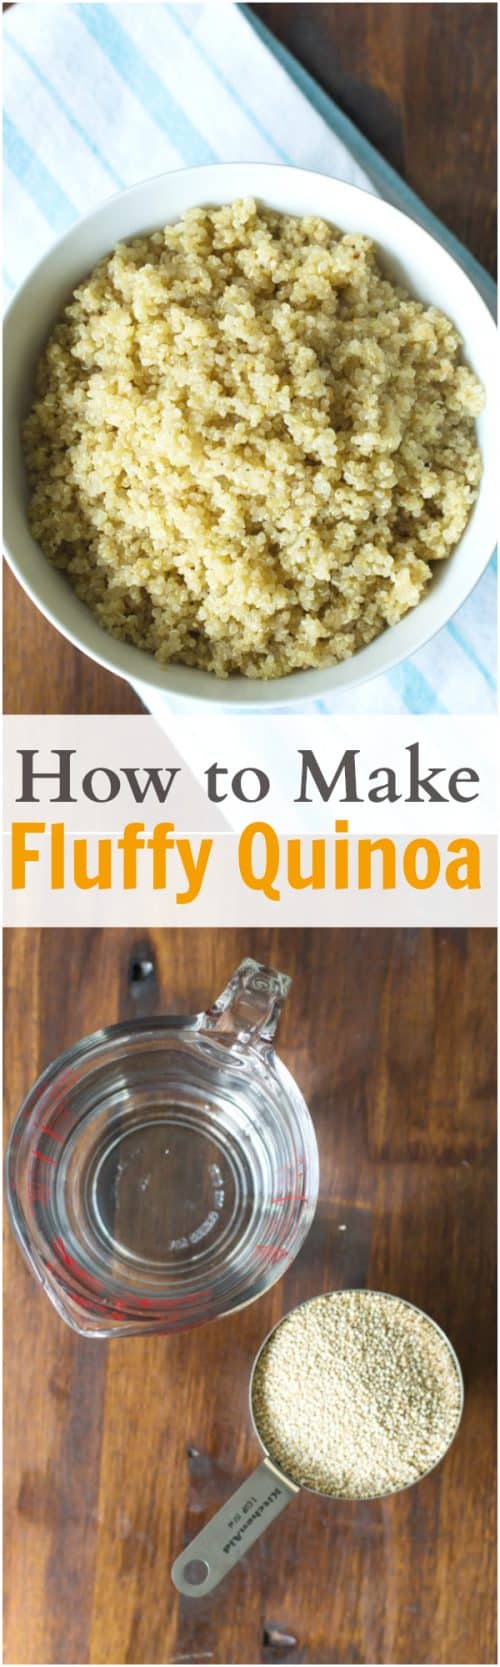 How to Make Fluffy Quinoa - Primavera Kitchen